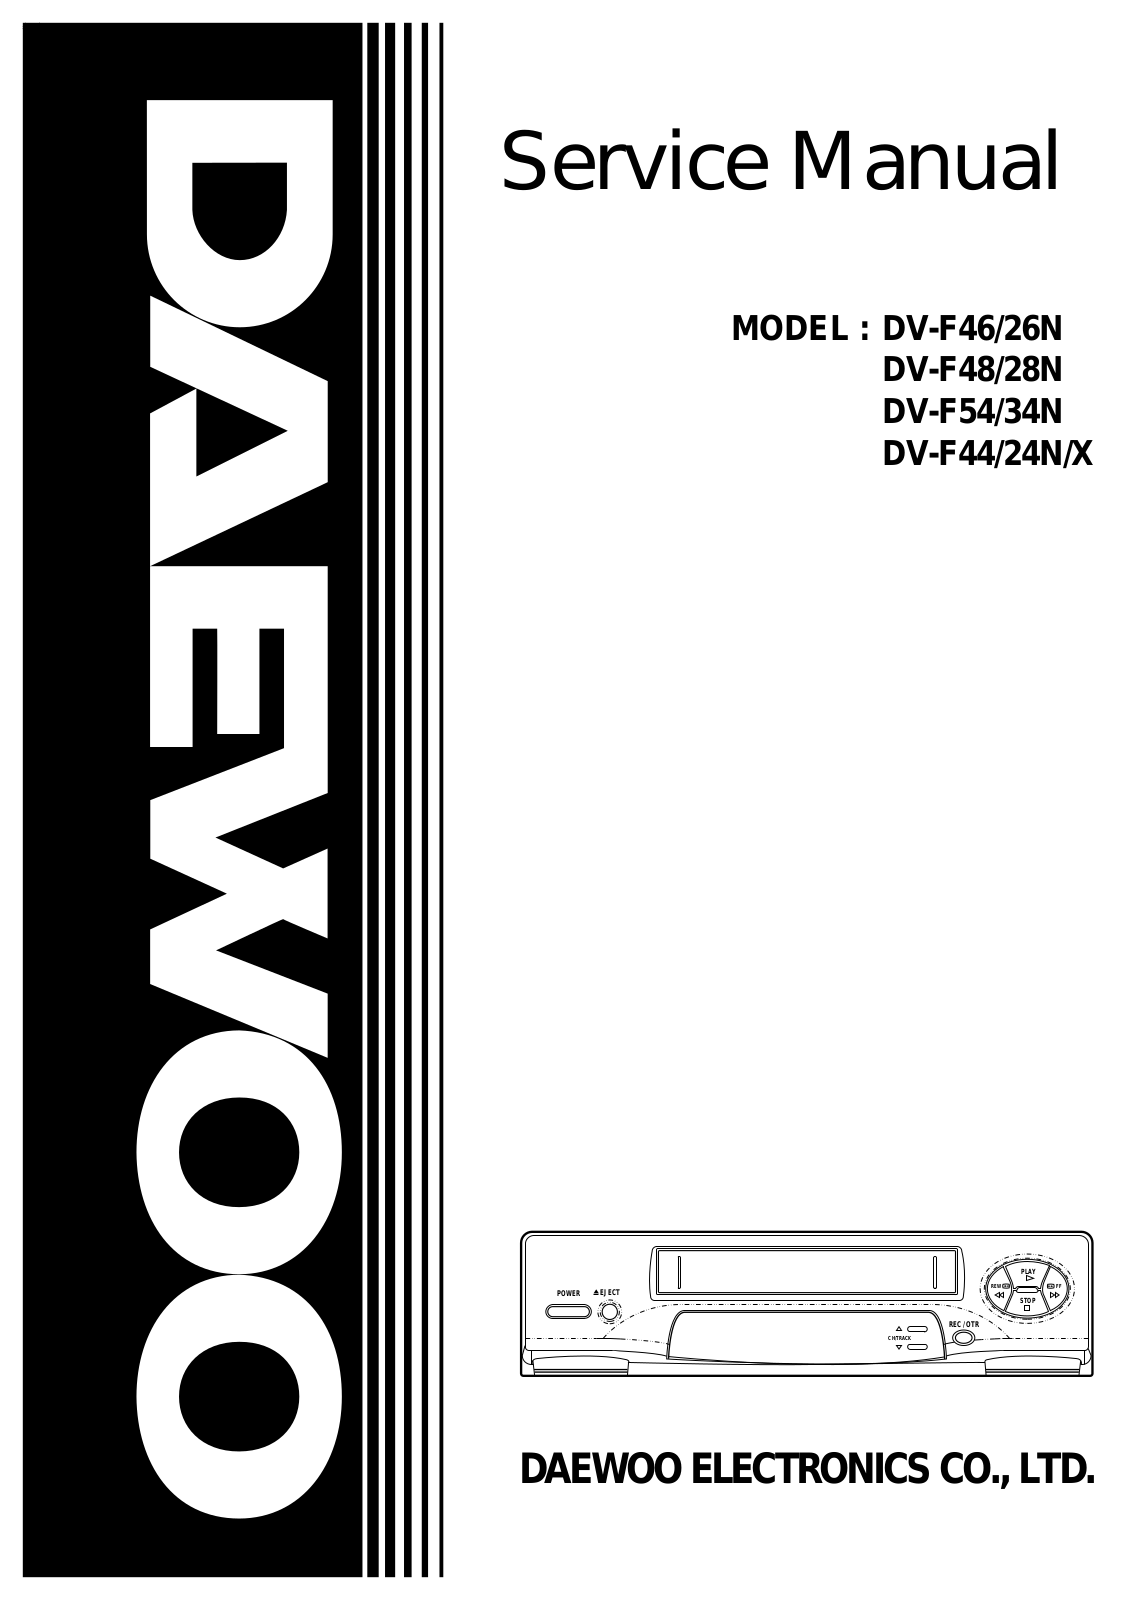 DAEWOO DV-F46, DV-F26N, DV-F48, DV-F28N, DV-F54 Service Manual